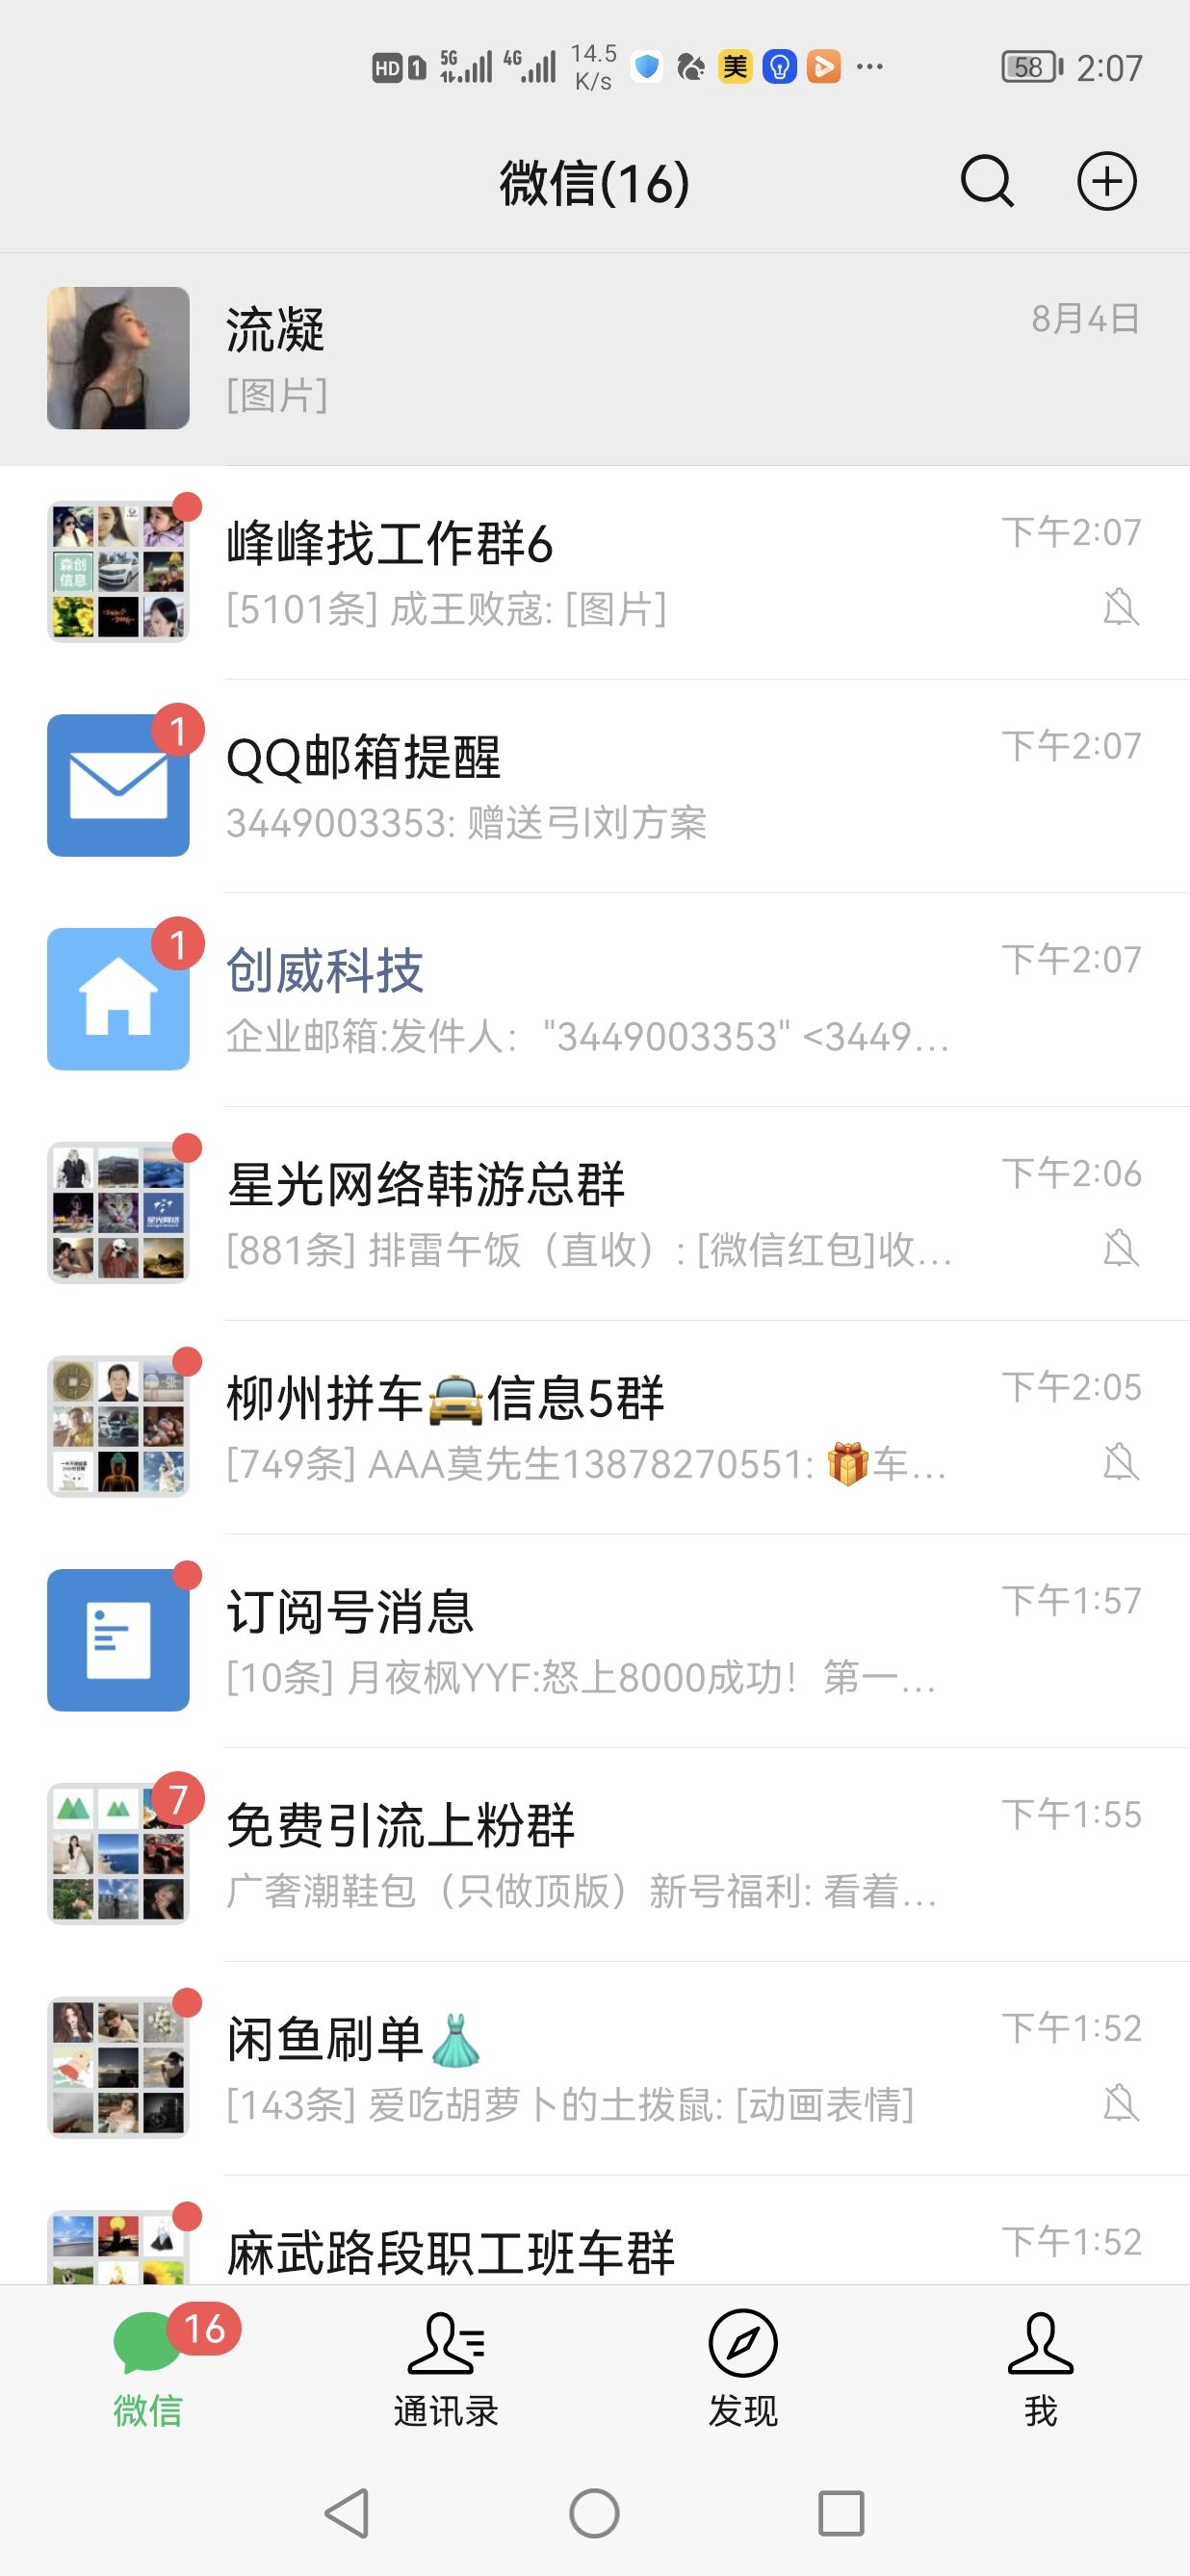 加入同行的QQ群通过邮箱截流到同行意向客户的微信